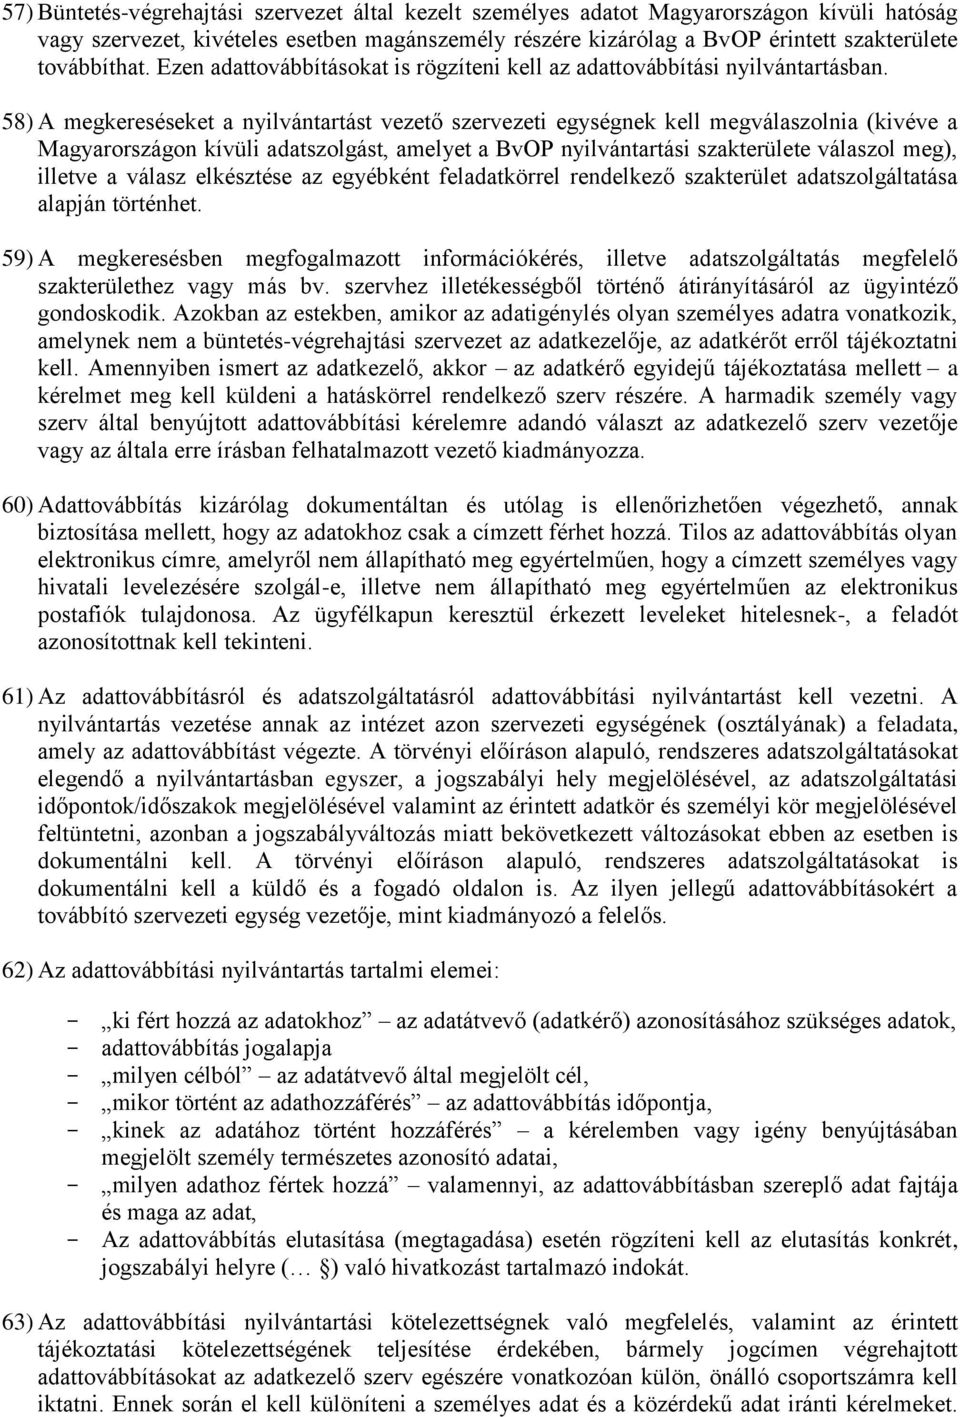 58) A megkereséseket a nyilvántartást vezető szervezeti egységnek kell megválaszolnia (kivéve a Magyarországon kívüli adatszolgást, amelyet a BvOP nyilvántartási szakterülete válaszol meg), illetve a